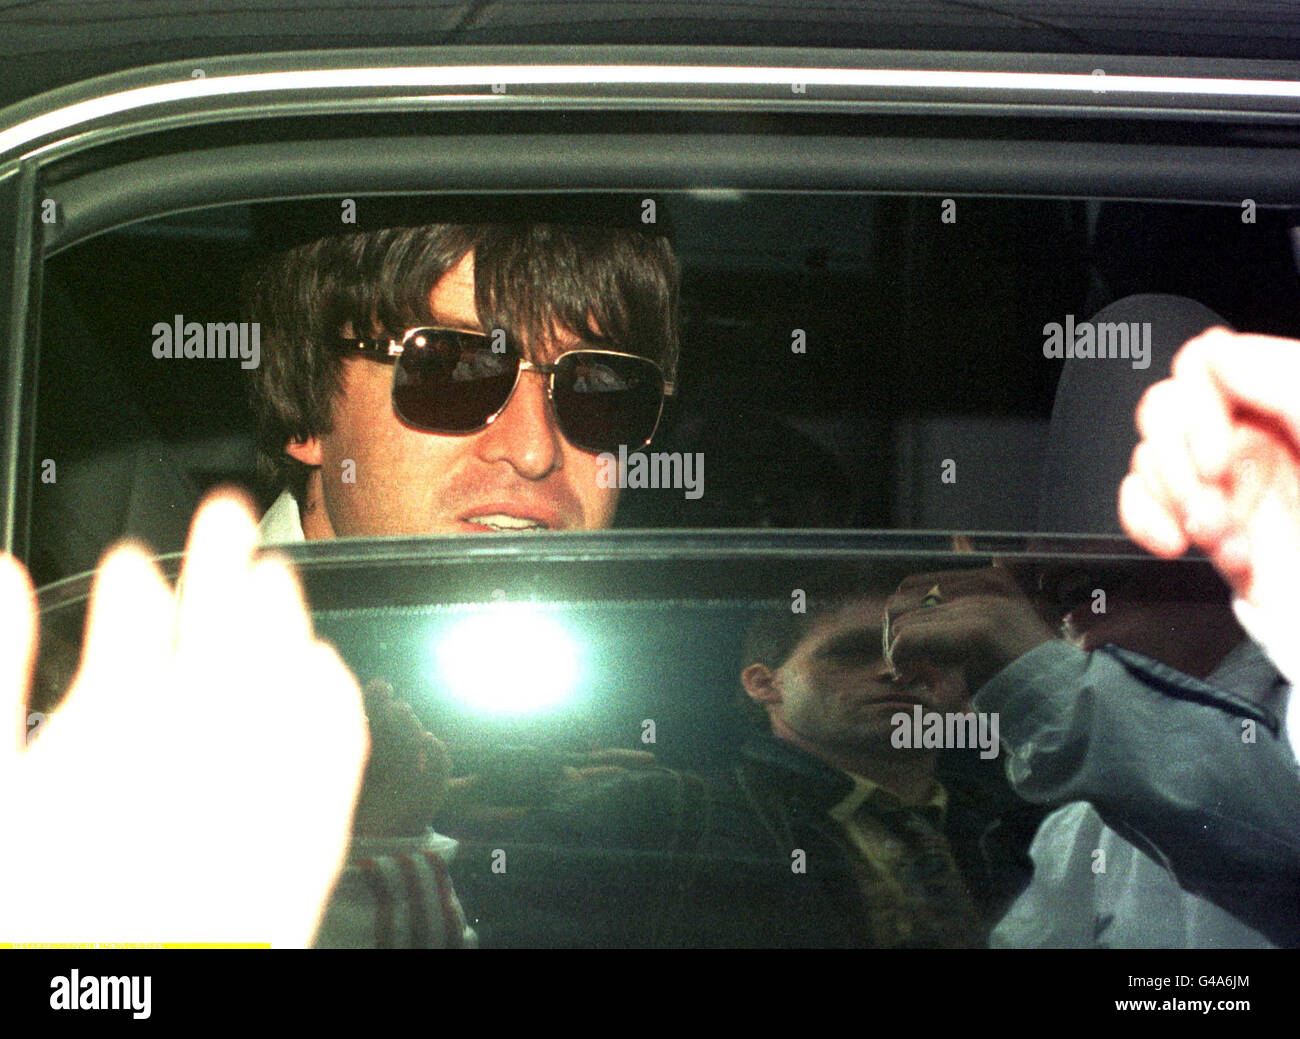 Noel Gallagher von Oasis guckt über ein halb geöffnetes Fenster, als er heute (Freitag) in einer abgedunkelten Limousine vom Flughafen Gatwick weggefahren wird, nachdem die Band aus Mexiko hereingeflogen ist, wo sie ihre weltweite Tour abgeschlossen hat. Siehe PA Story SHOWBIZ Oasis. Foto von Adam Butler Stockfoto